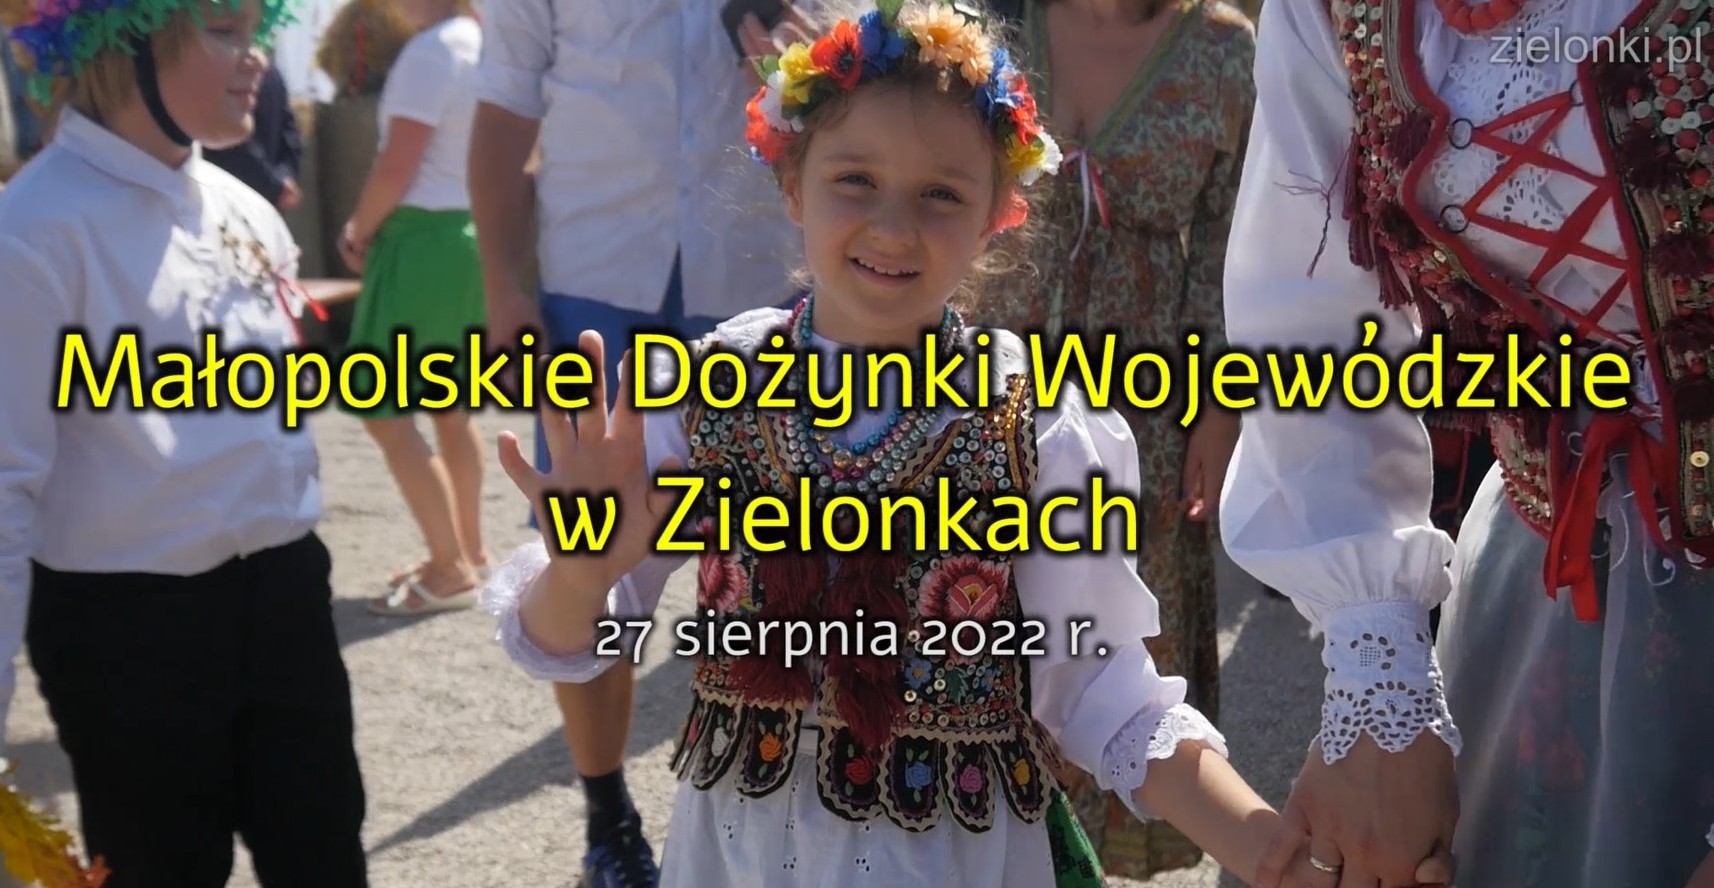 Teledysk z małopolskich dożynek w Zielonkach